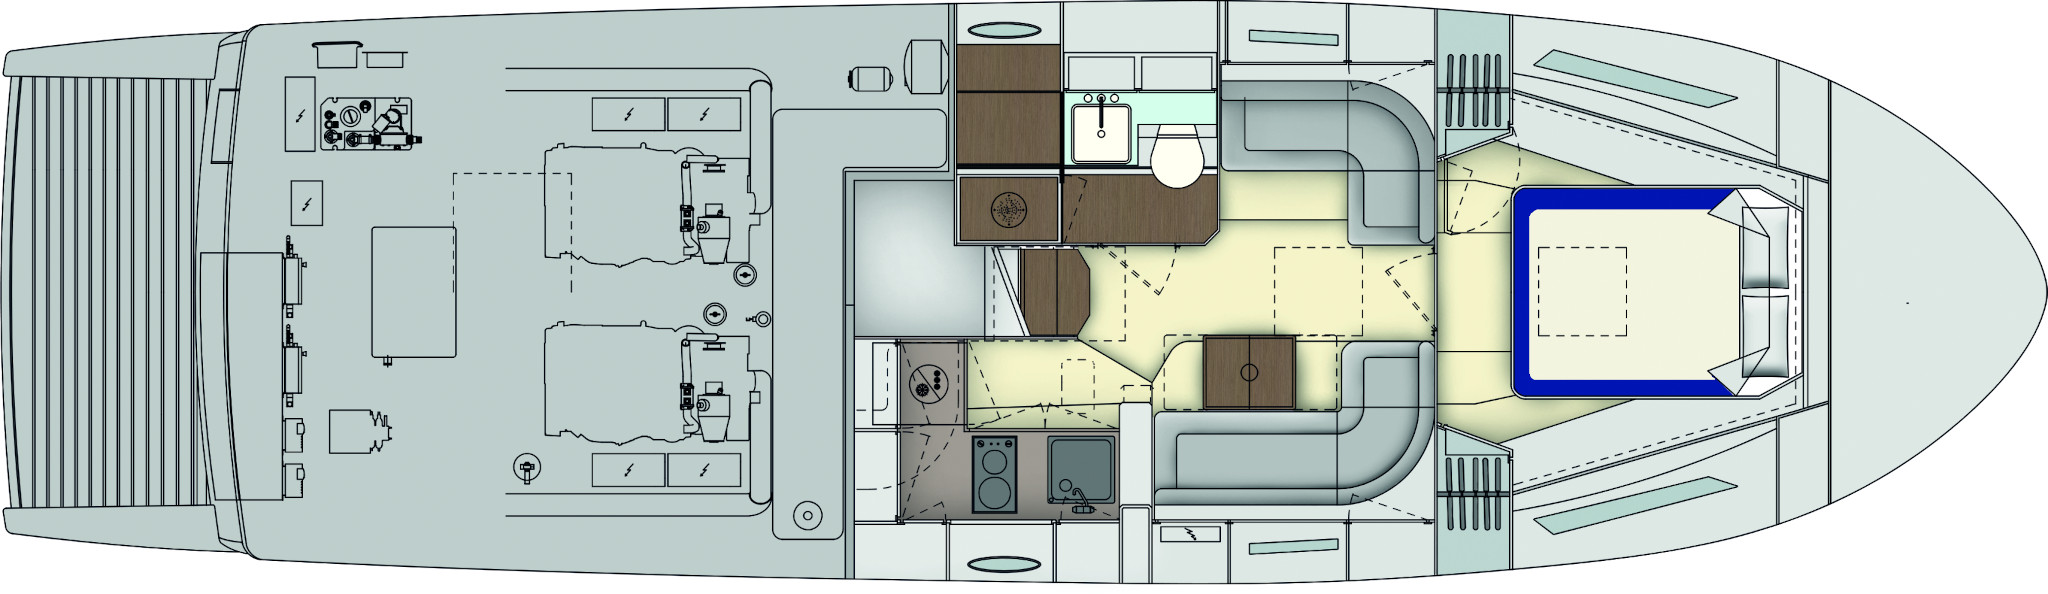 Lower Deck - Single Cabin